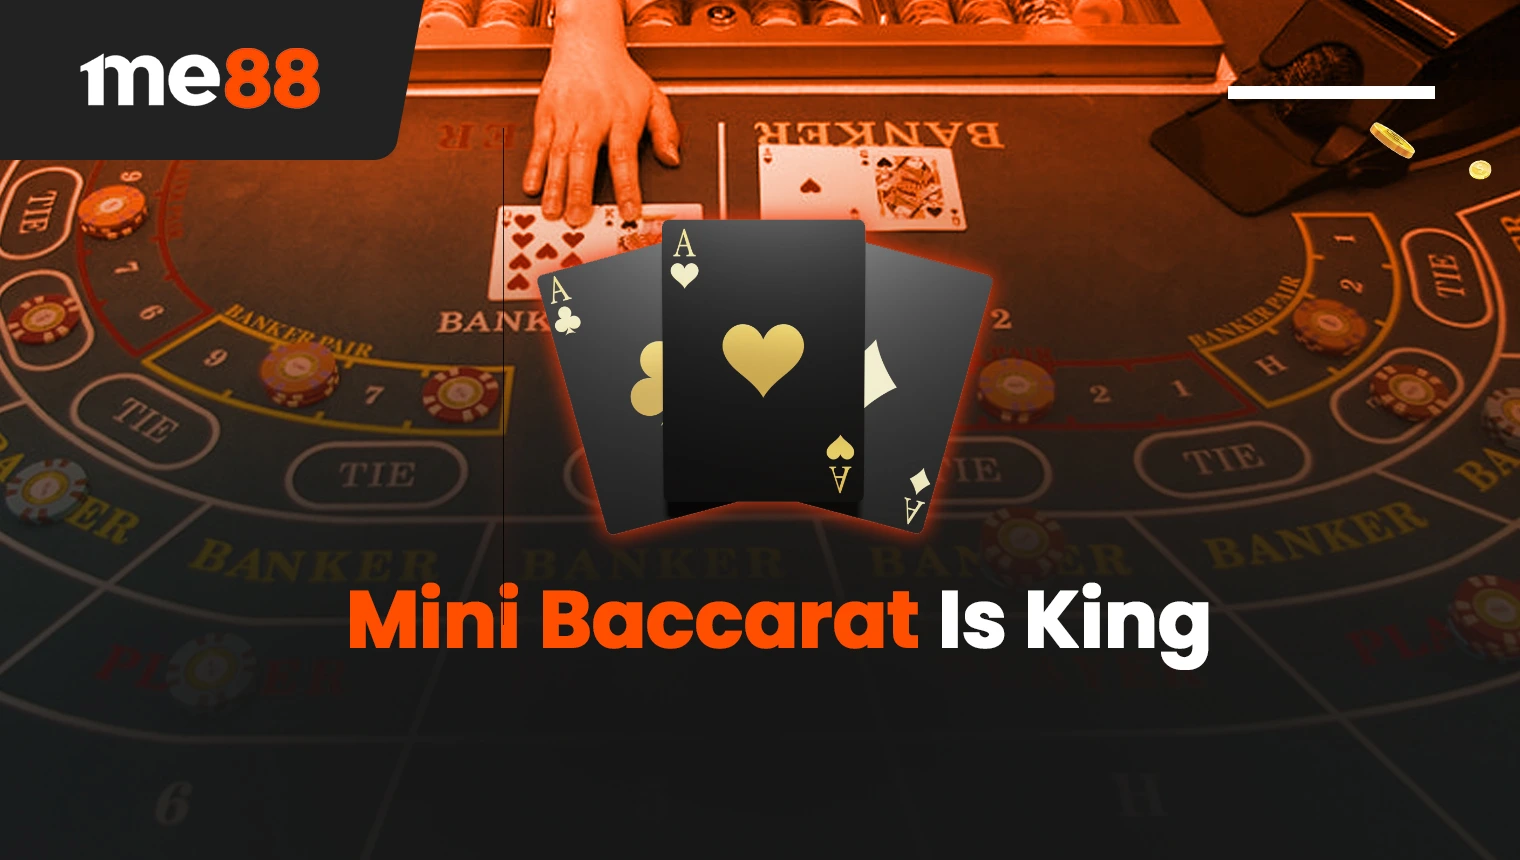 Mini Baccarat is King